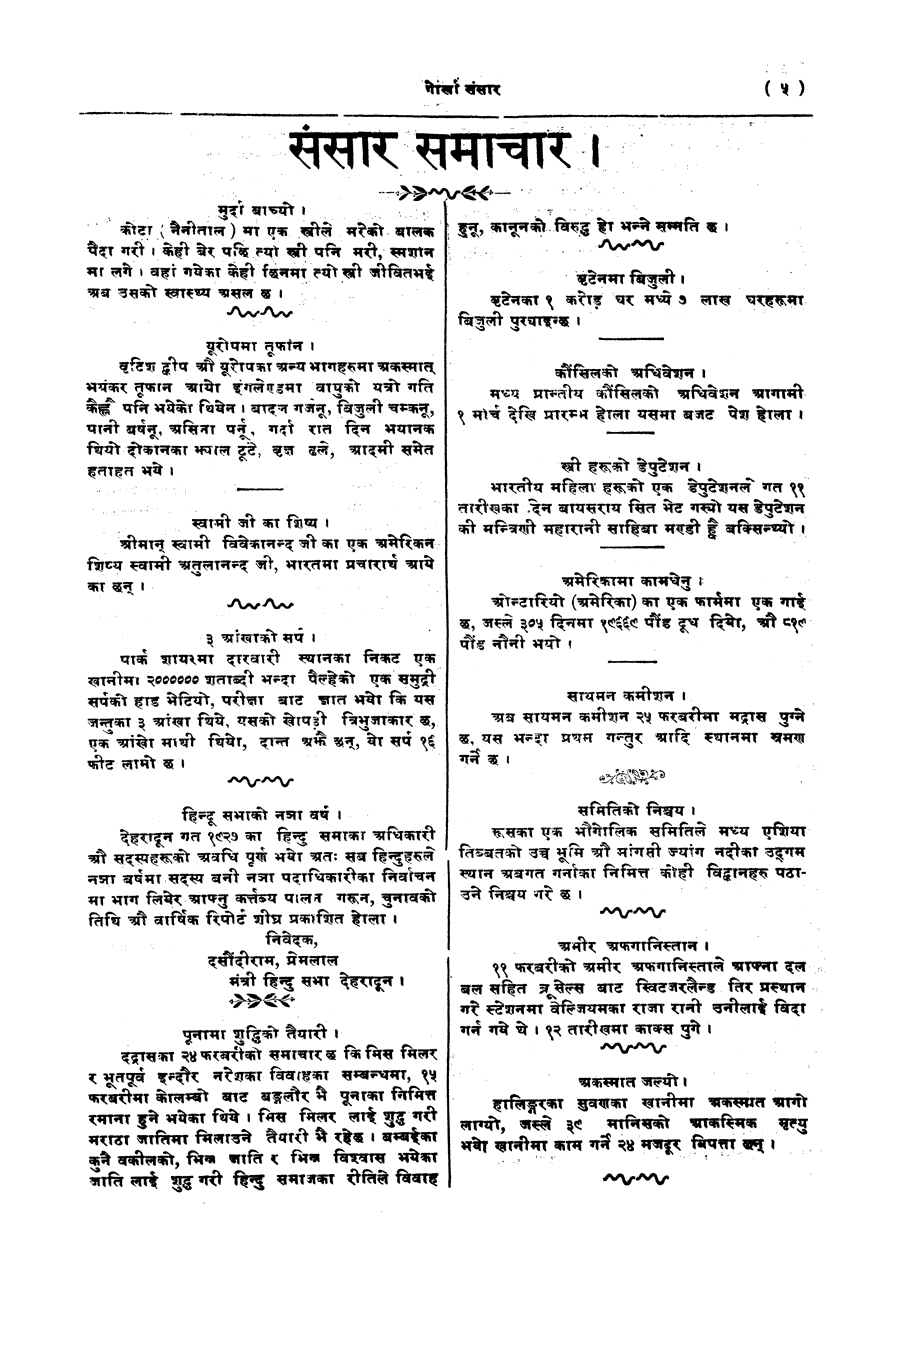 Gorkha Sansar, 21 Feb 1928, page 5